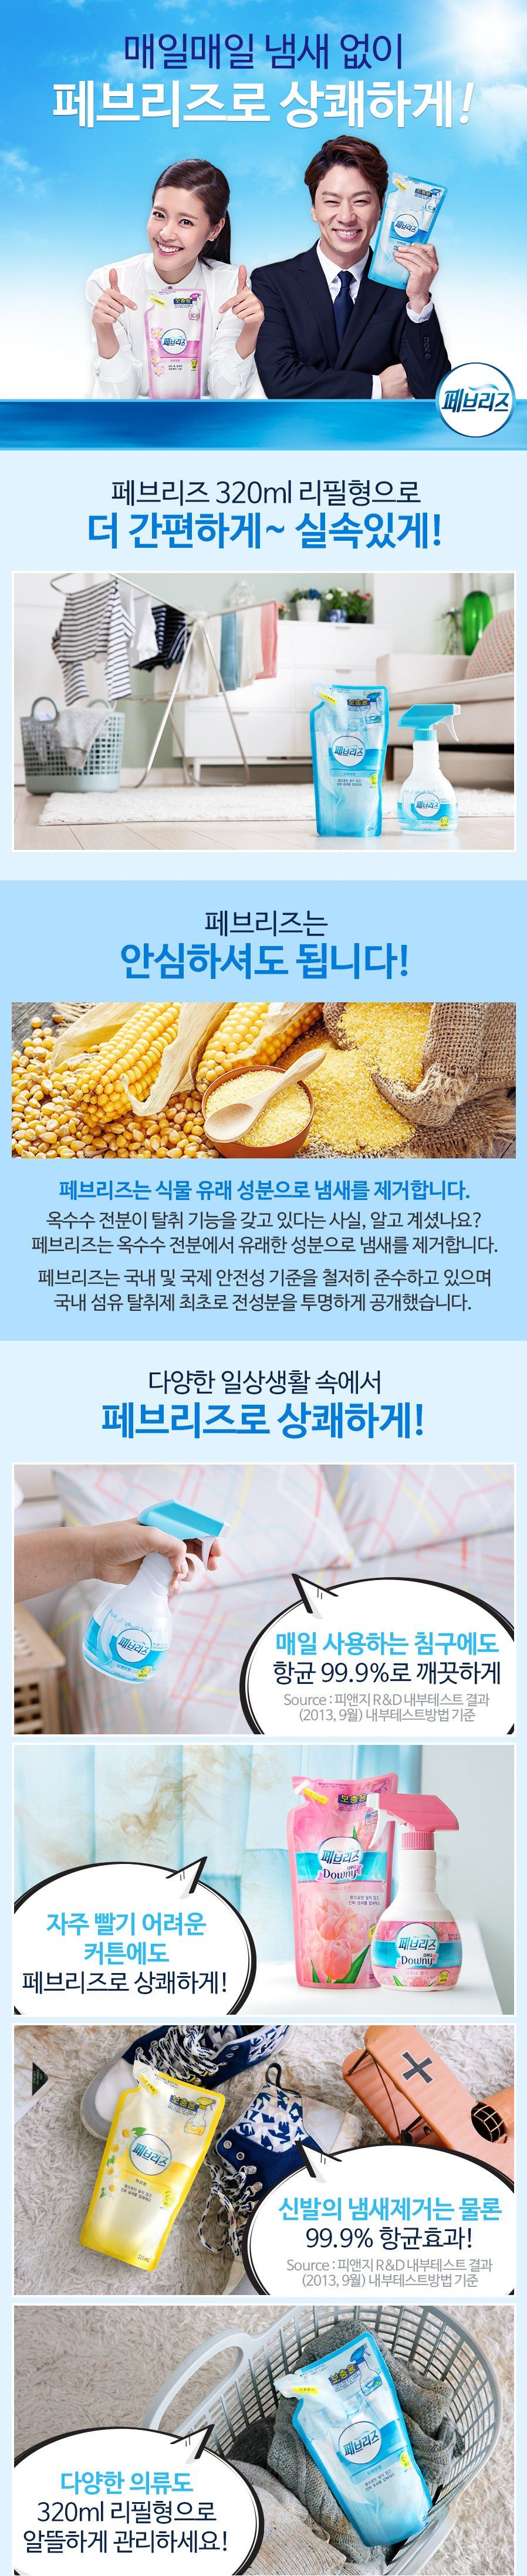 韓國食品-[P&G] 페브리즈리필[상쾌한향] 320ml